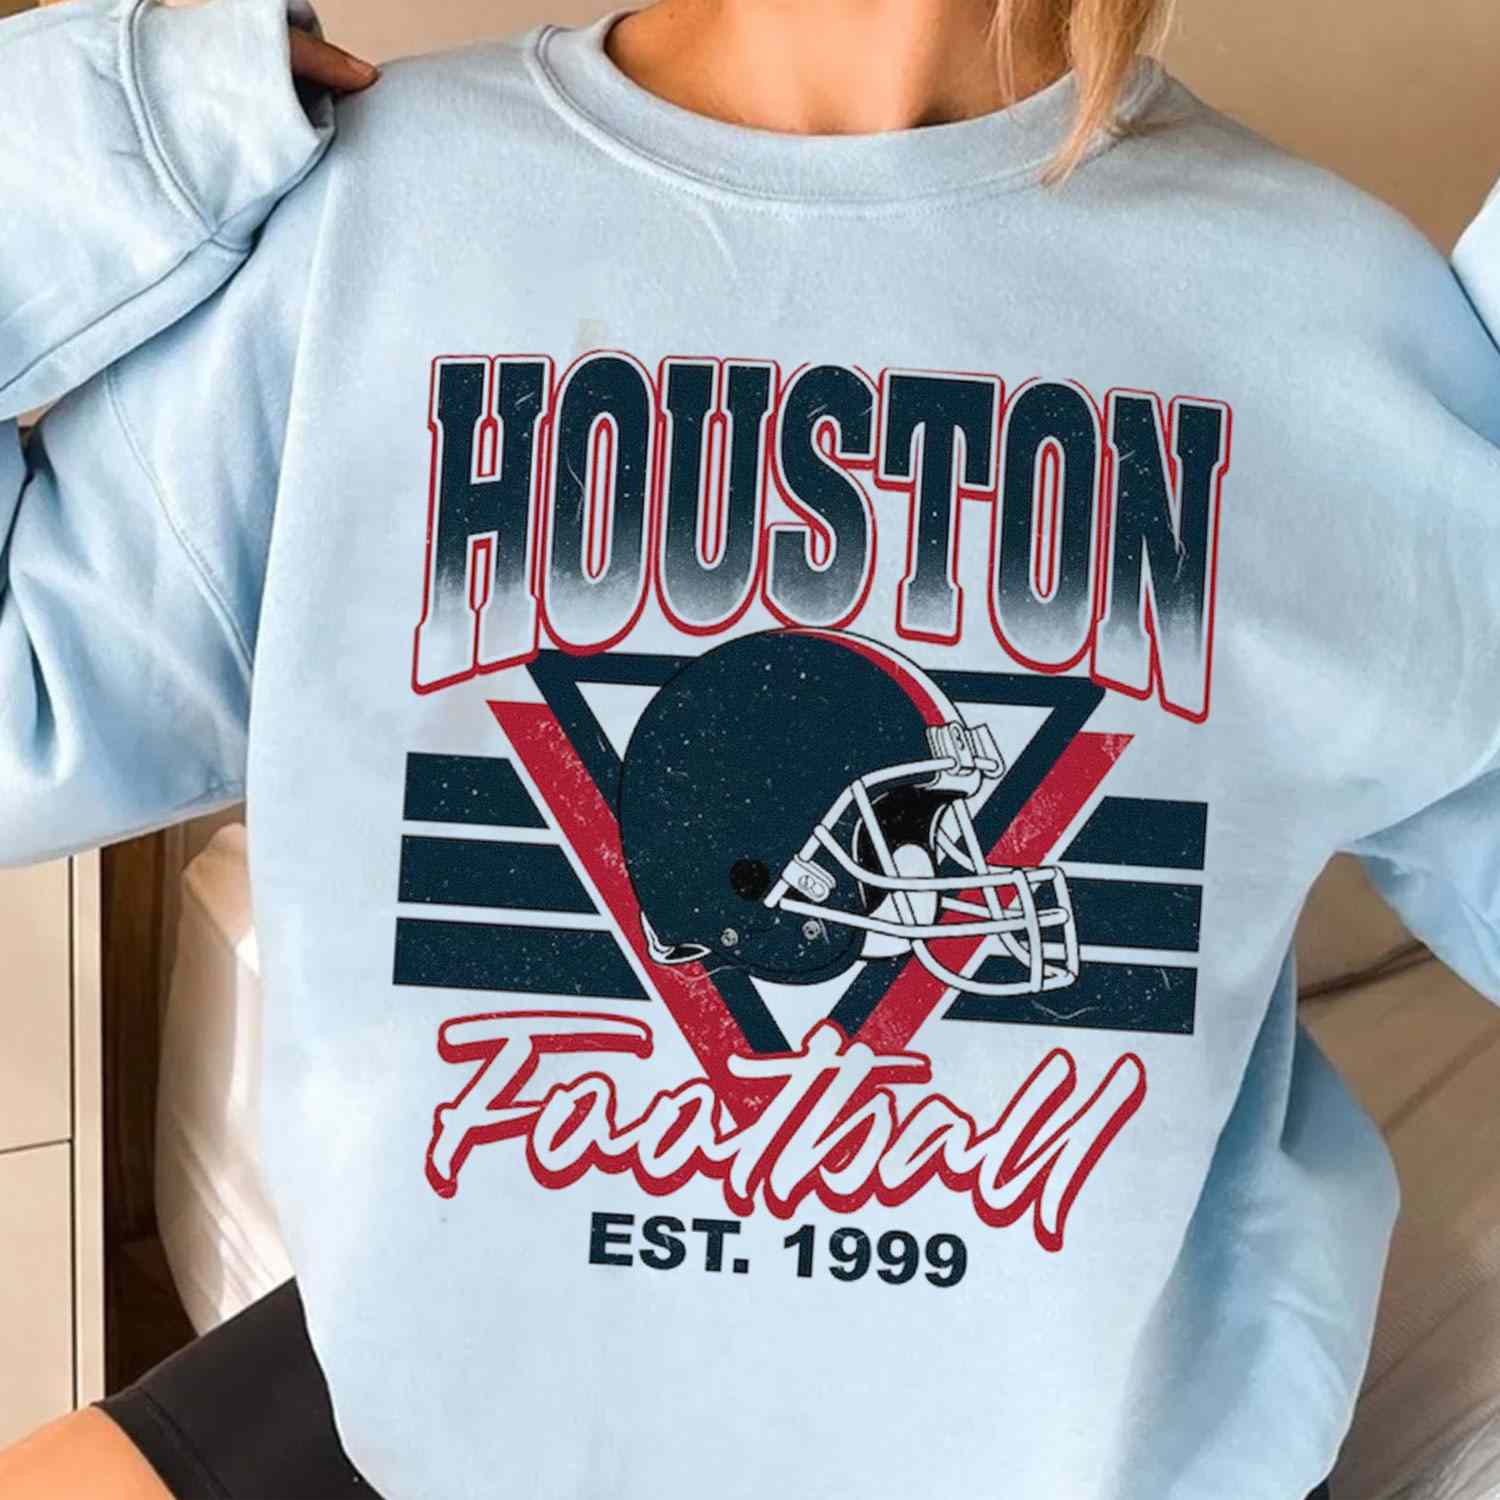 Houston Texans Girl NFL T-Shirt